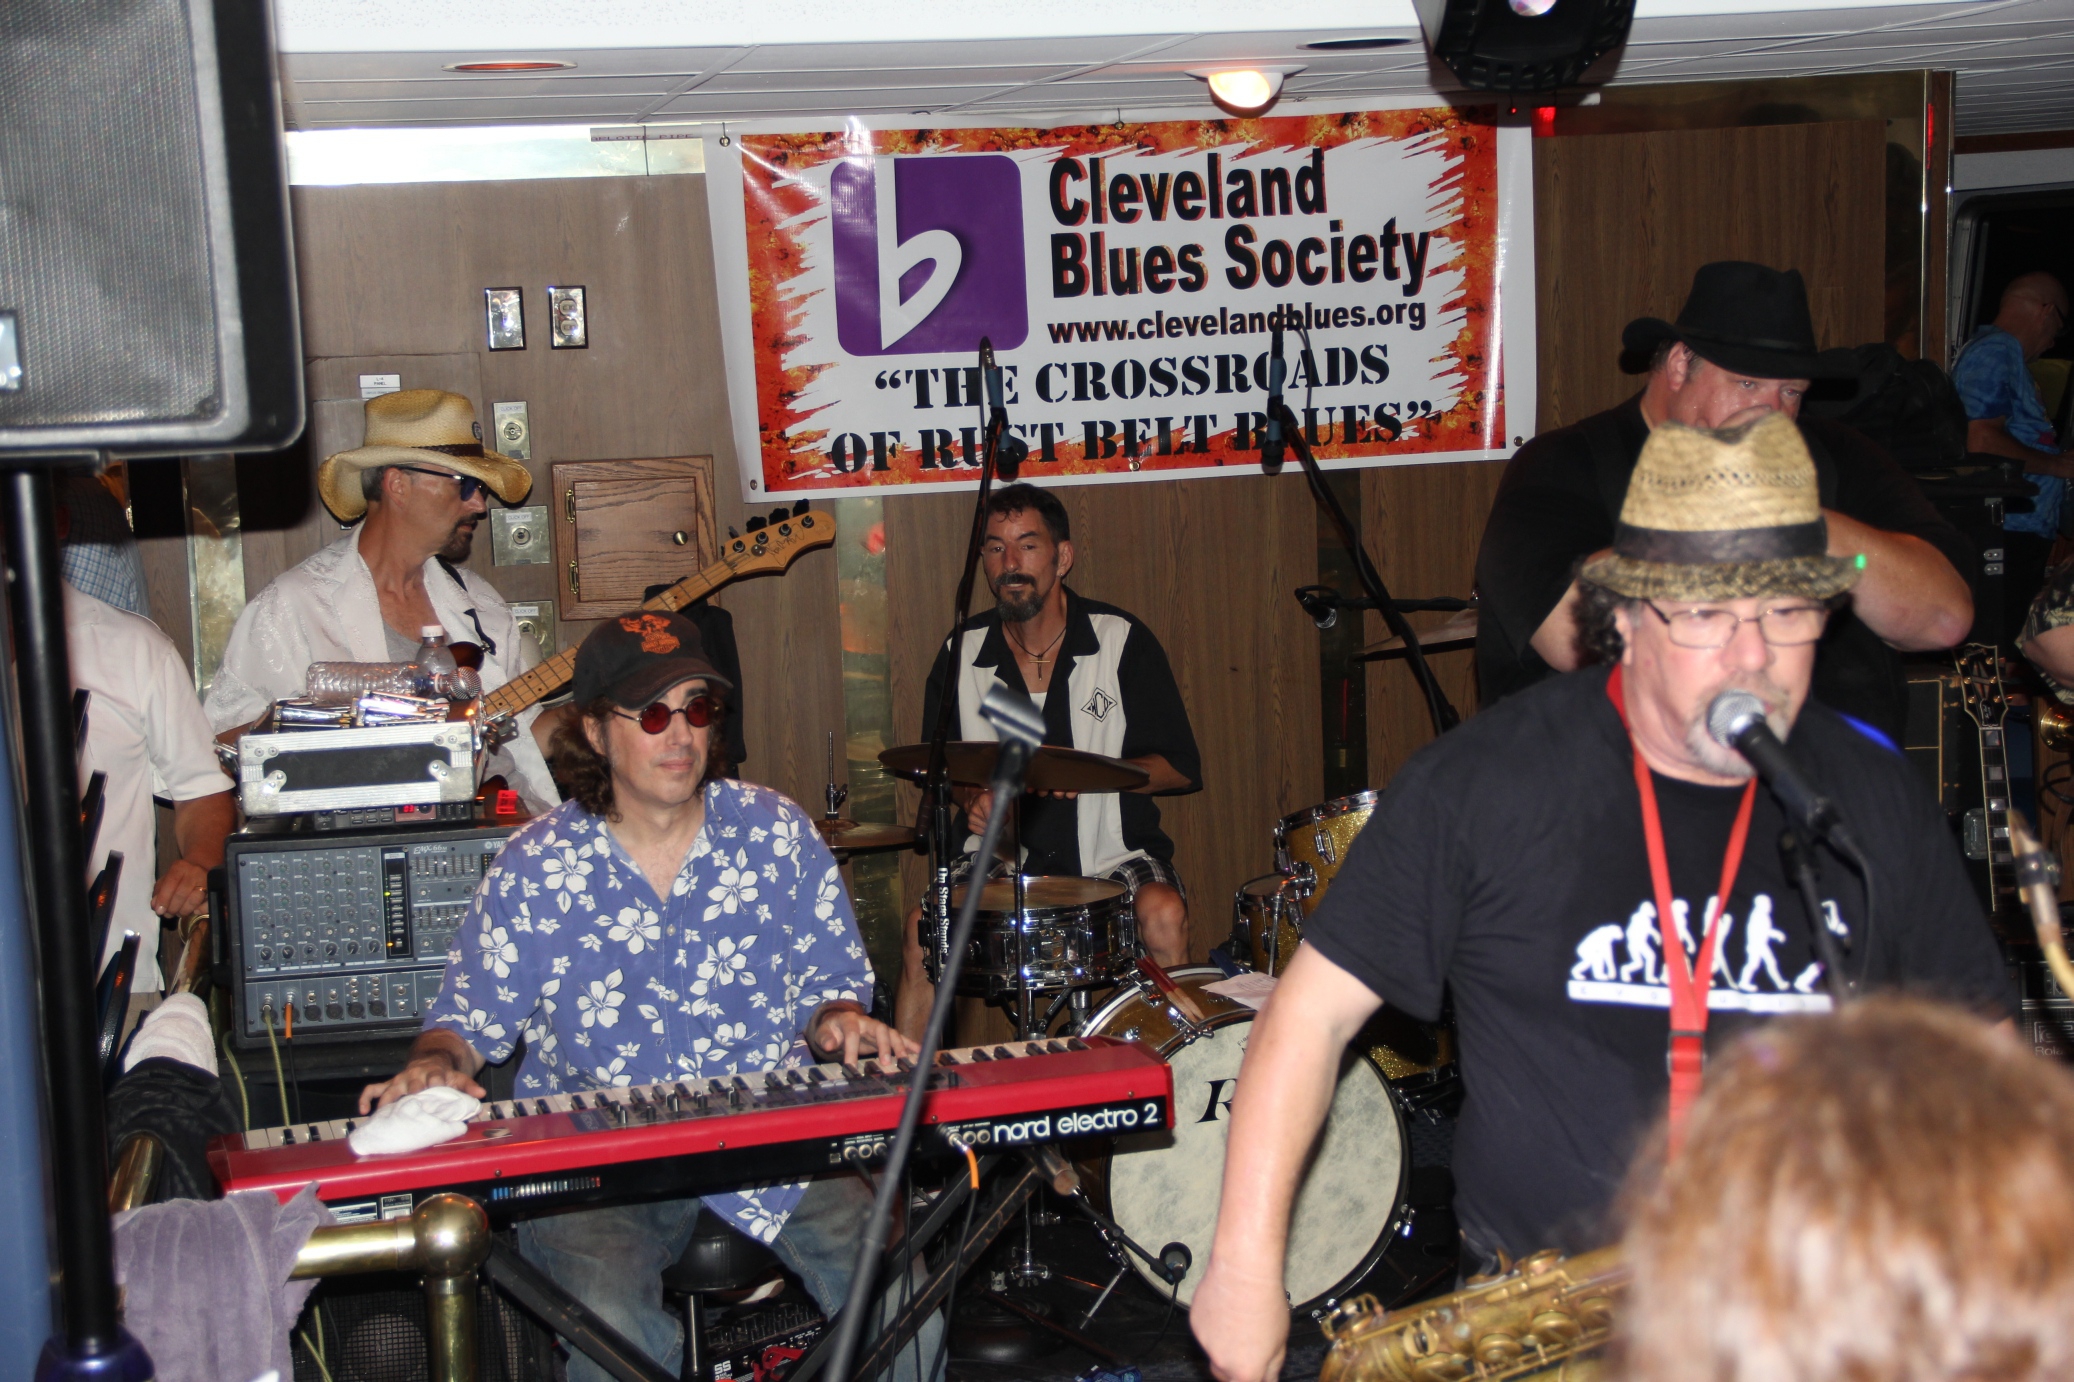 2013-Cleveland-Blues-Society-Blues-Cruise-Musicians2013-Blues-Cruise-Martha-101-IMG_0160